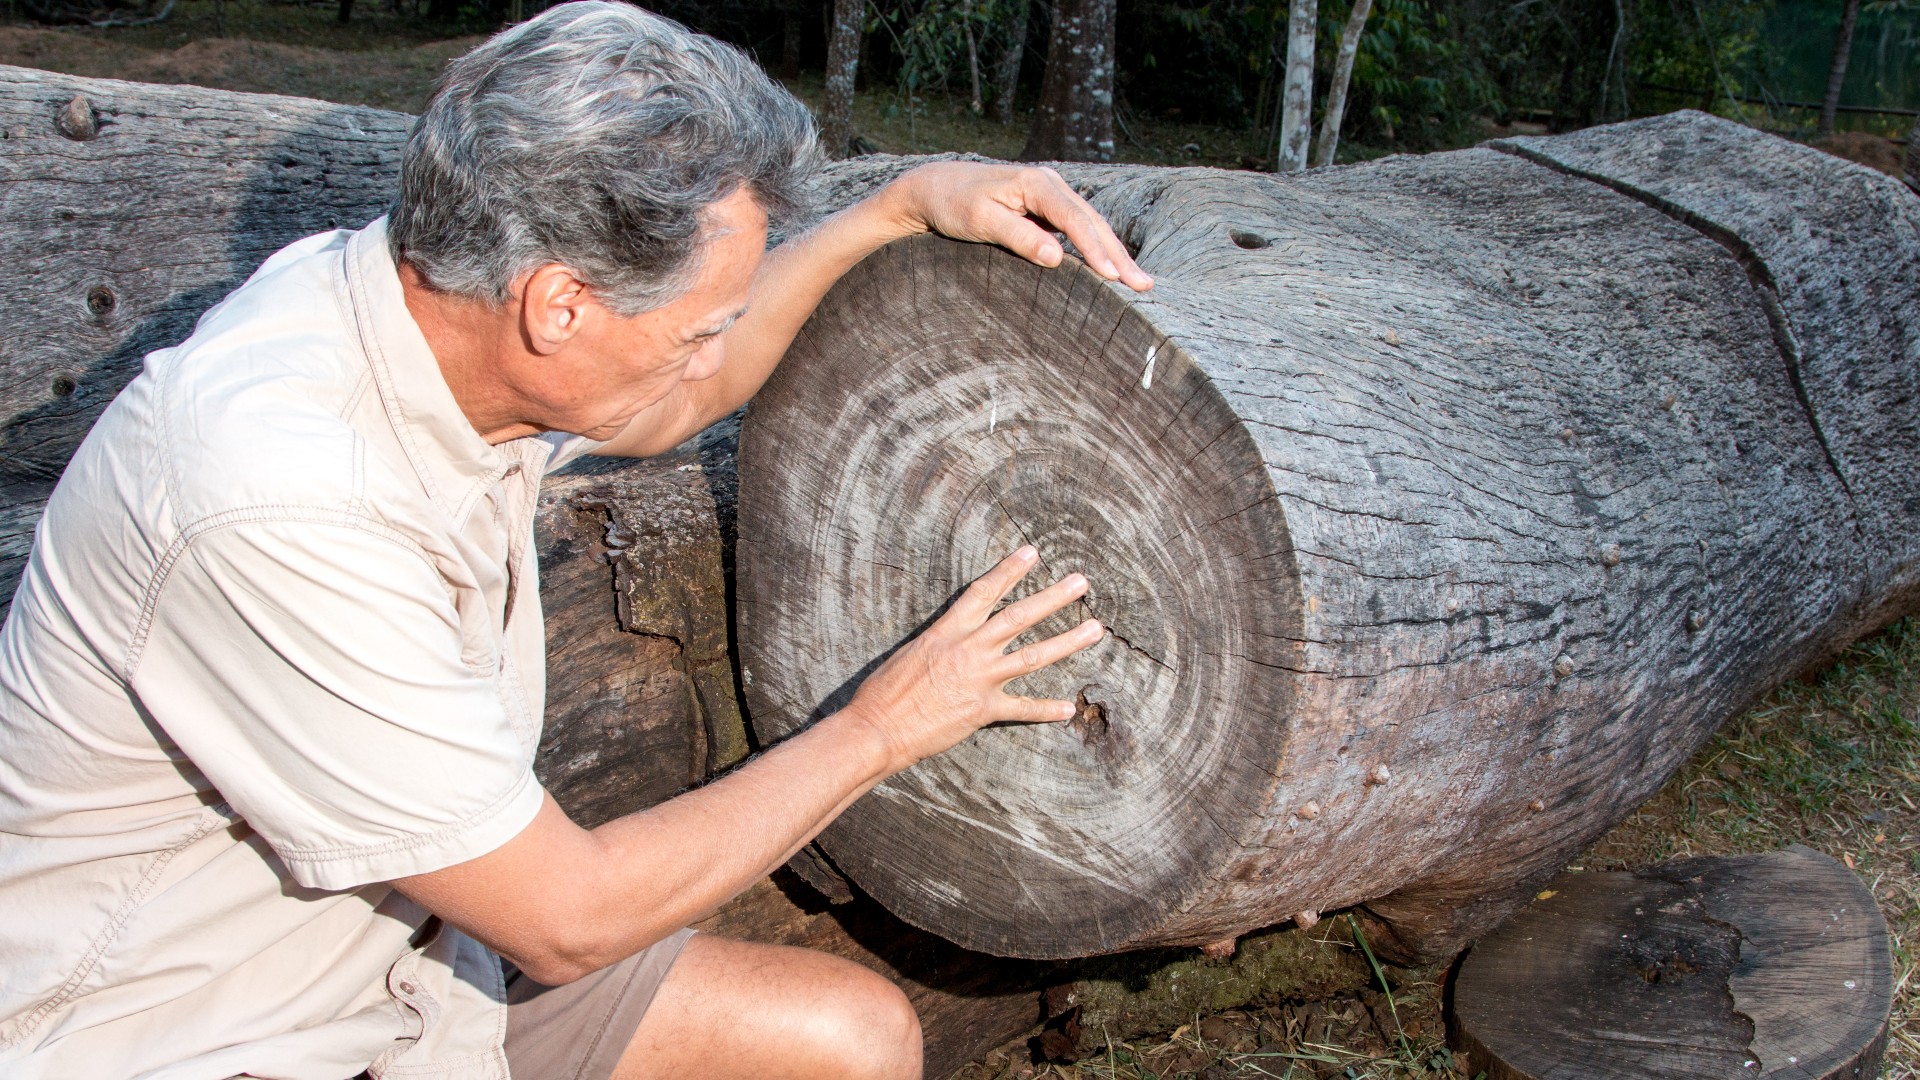 Hier sehen wir einen Mann, der die Jahresringe eines gefällten Baumes inspiziert, um herauszufinden, wie alt der Baum ist.